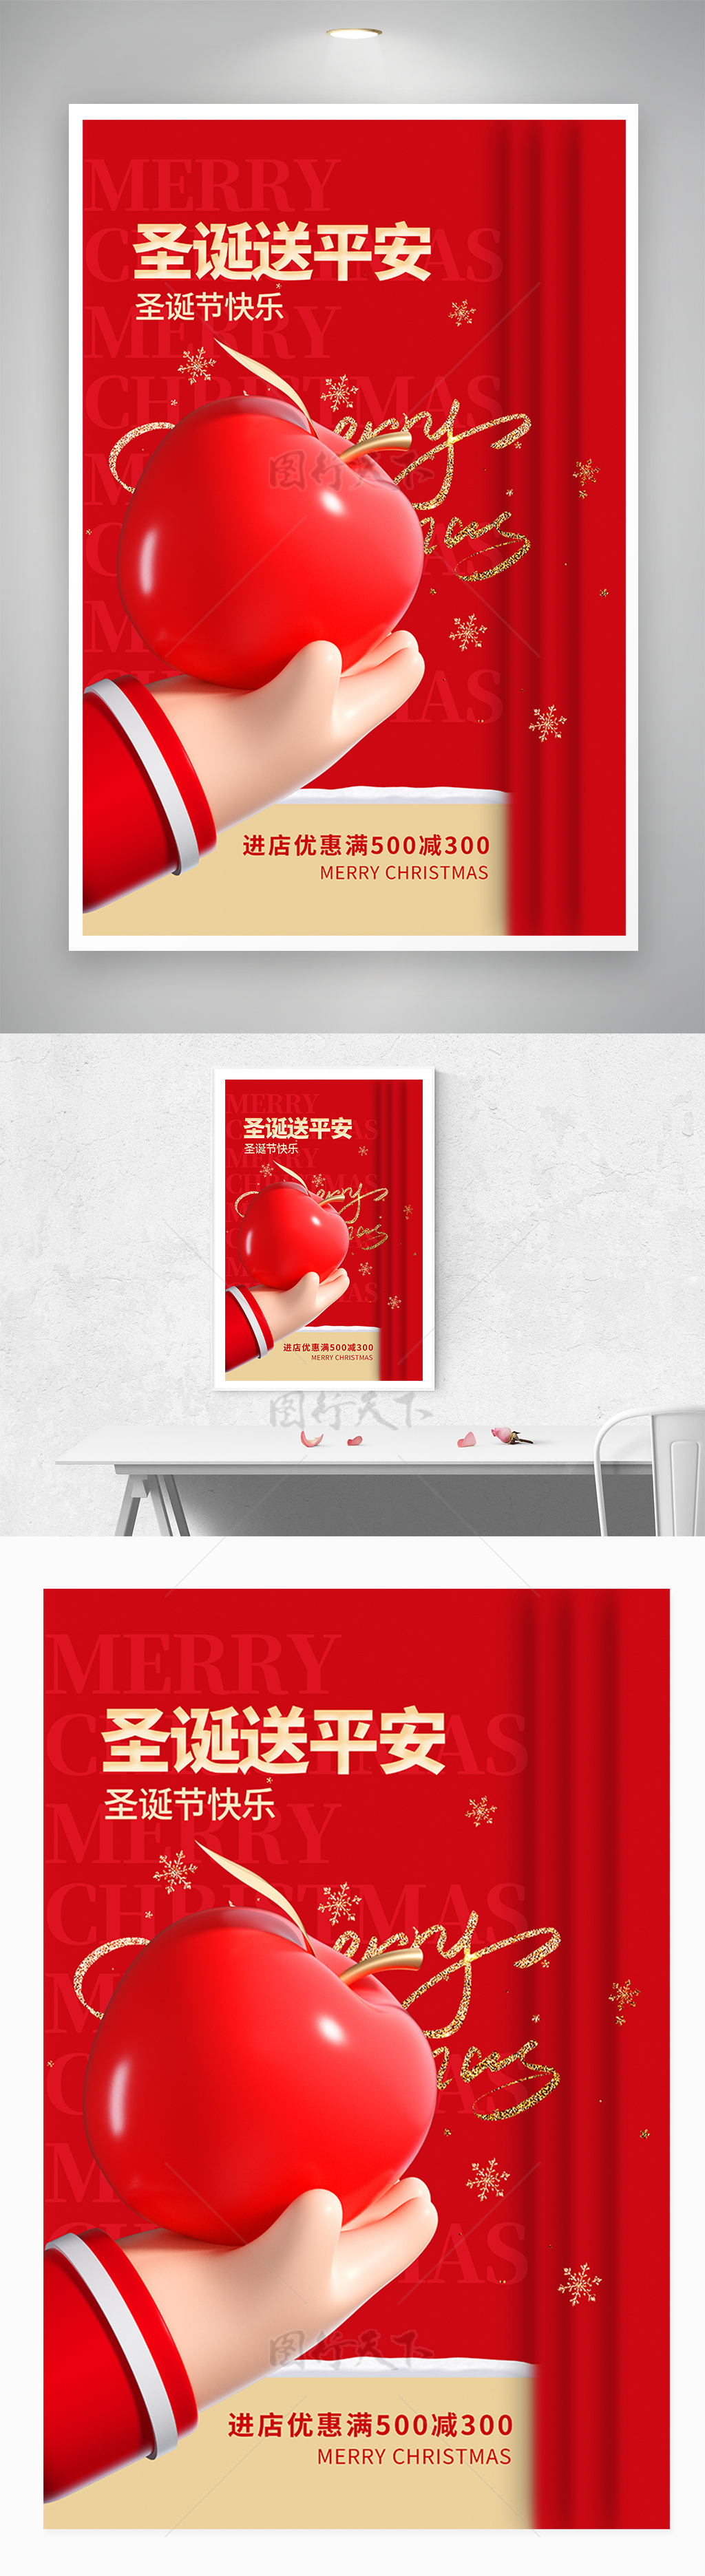 3D红色圣诞节平安夜宣传促销海报设计